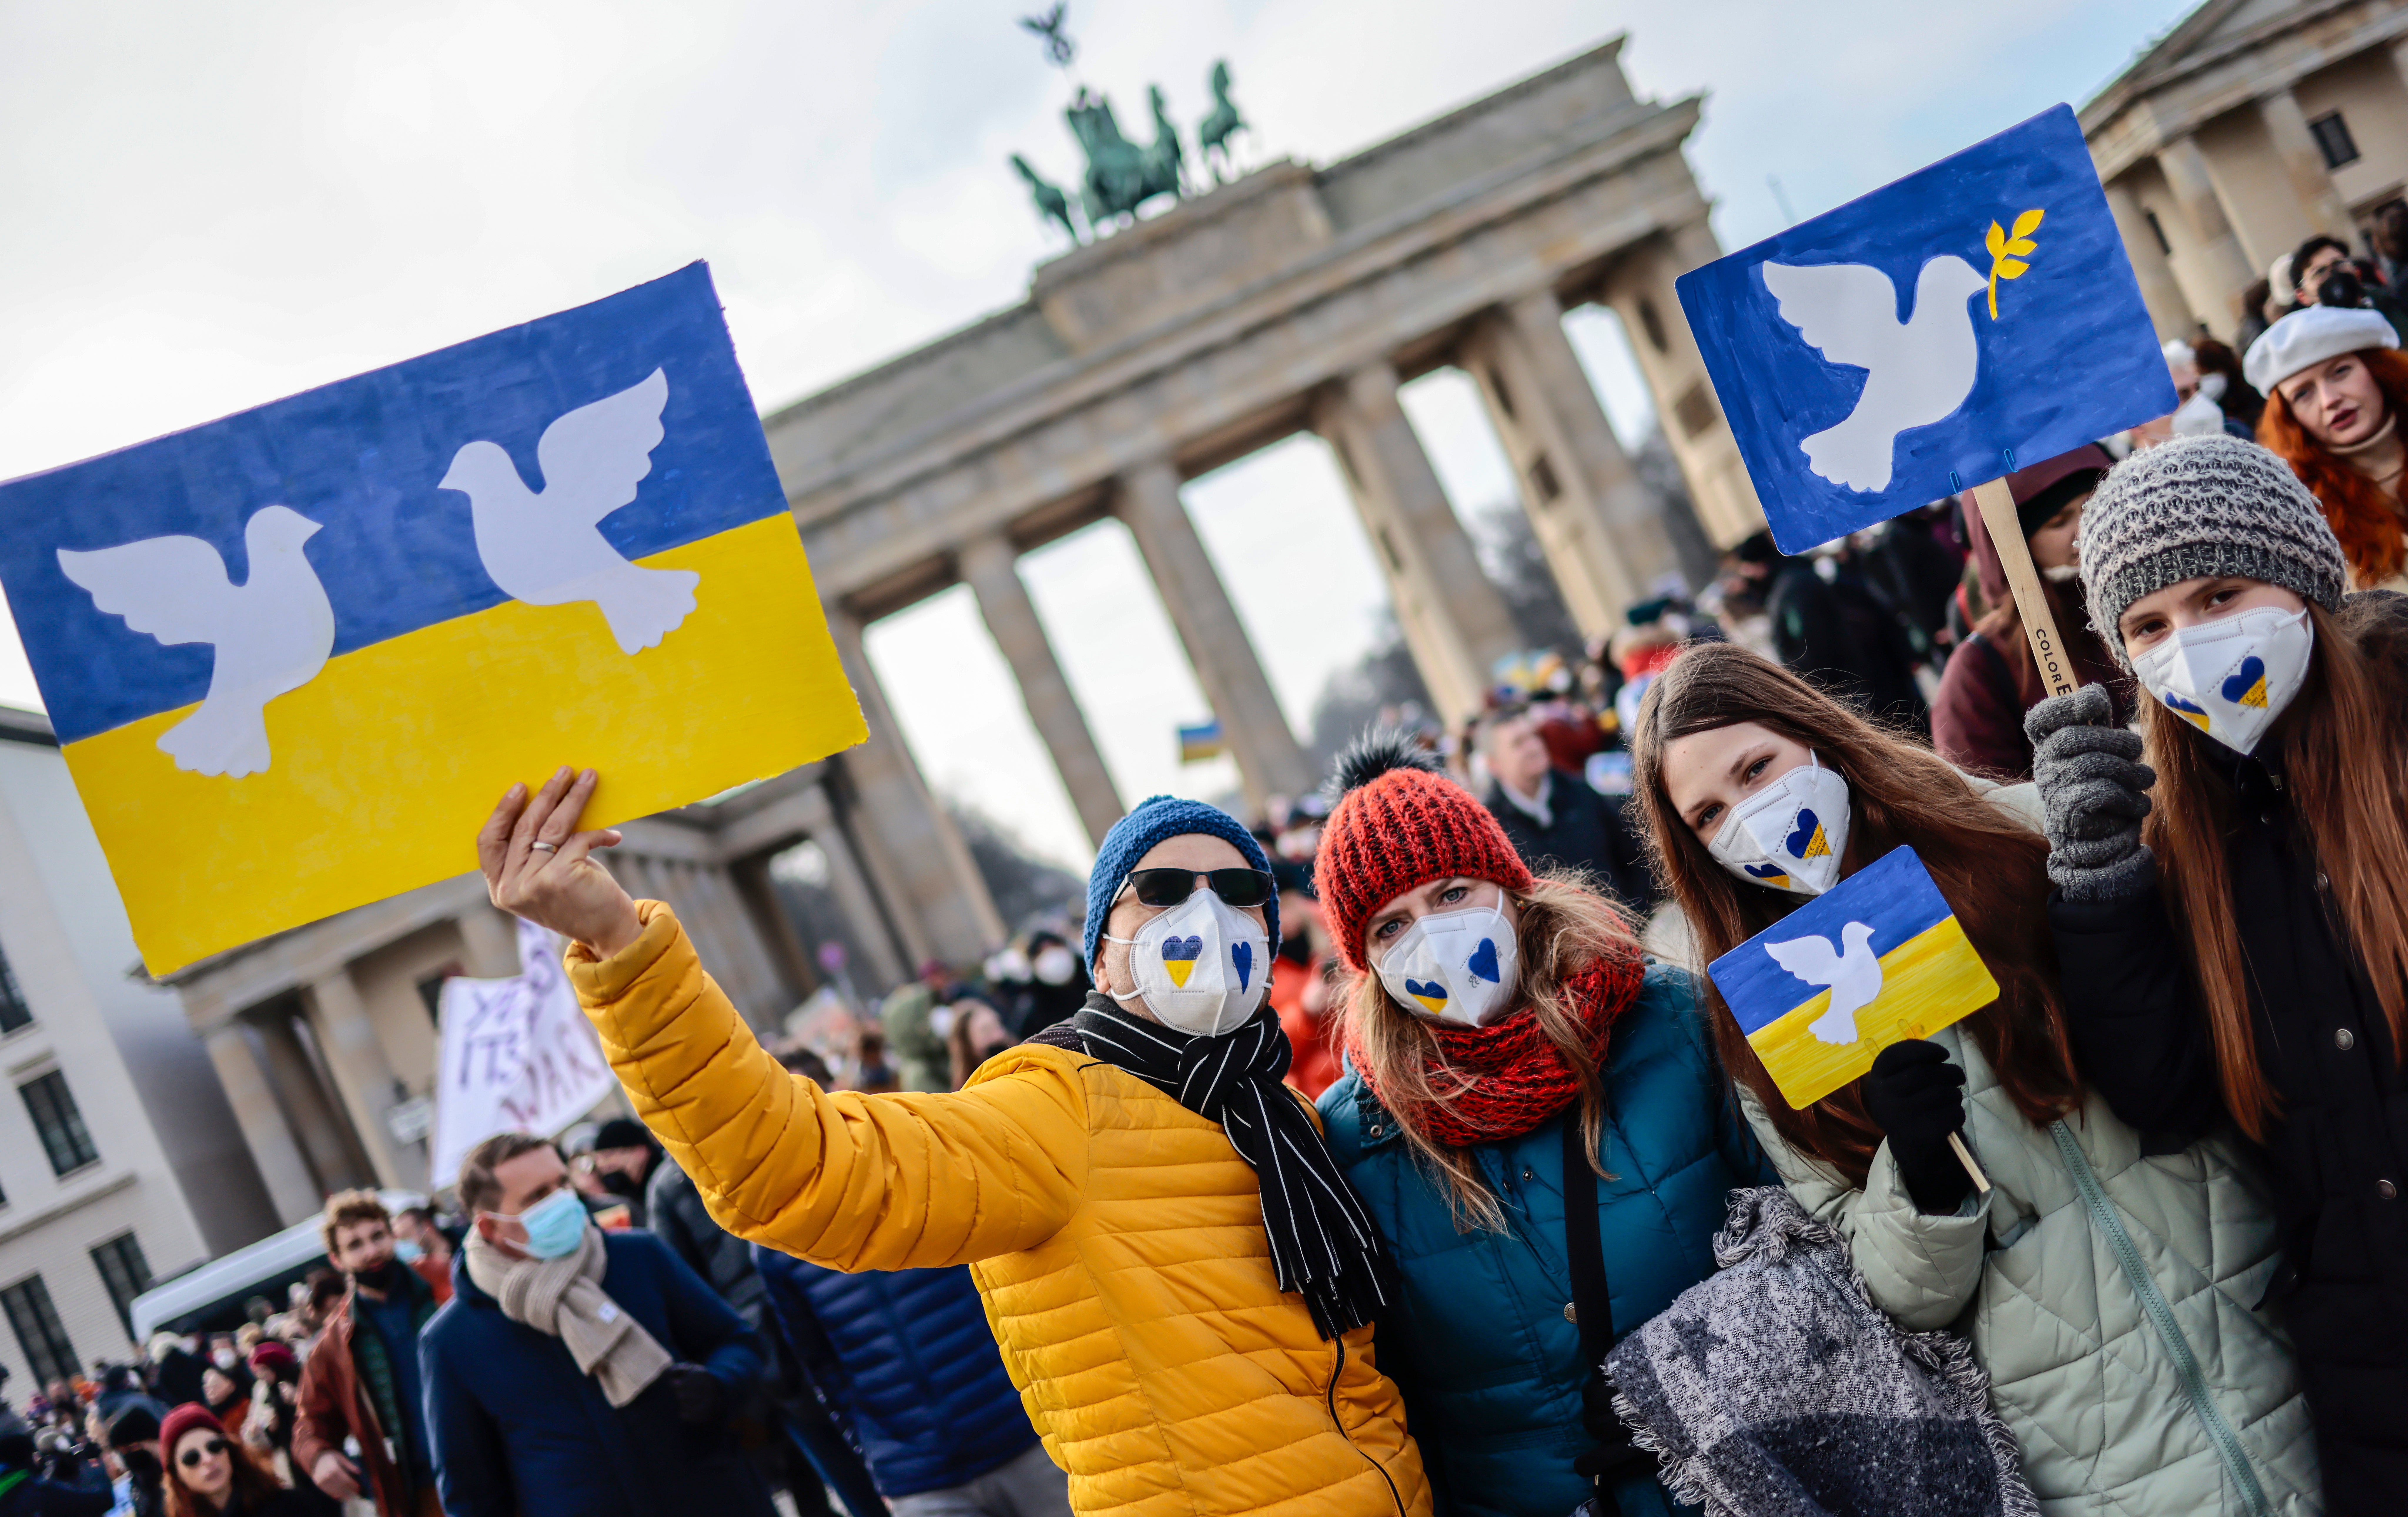 Personas reunidas en la Puerta de Brandeburgo para protestar contra la guerra en Ucrania el 27 de febrero de 2022 en Berlín, Alemania